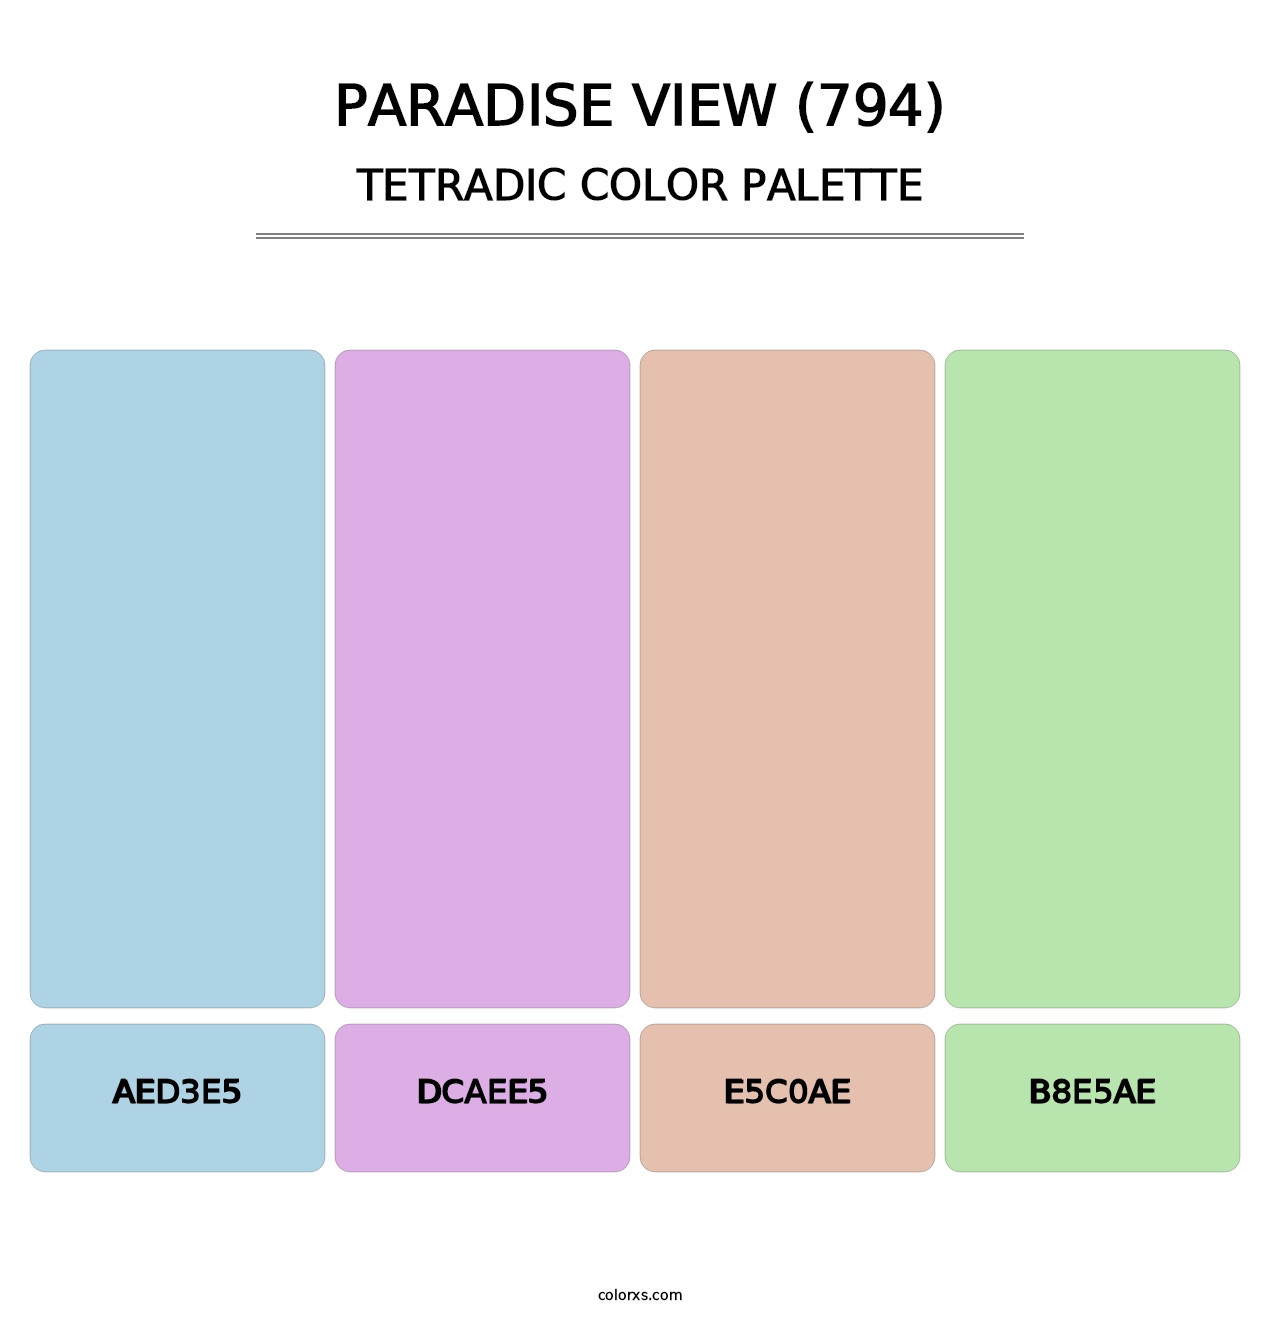 Paradise View (794) - Tetradic Color Palette